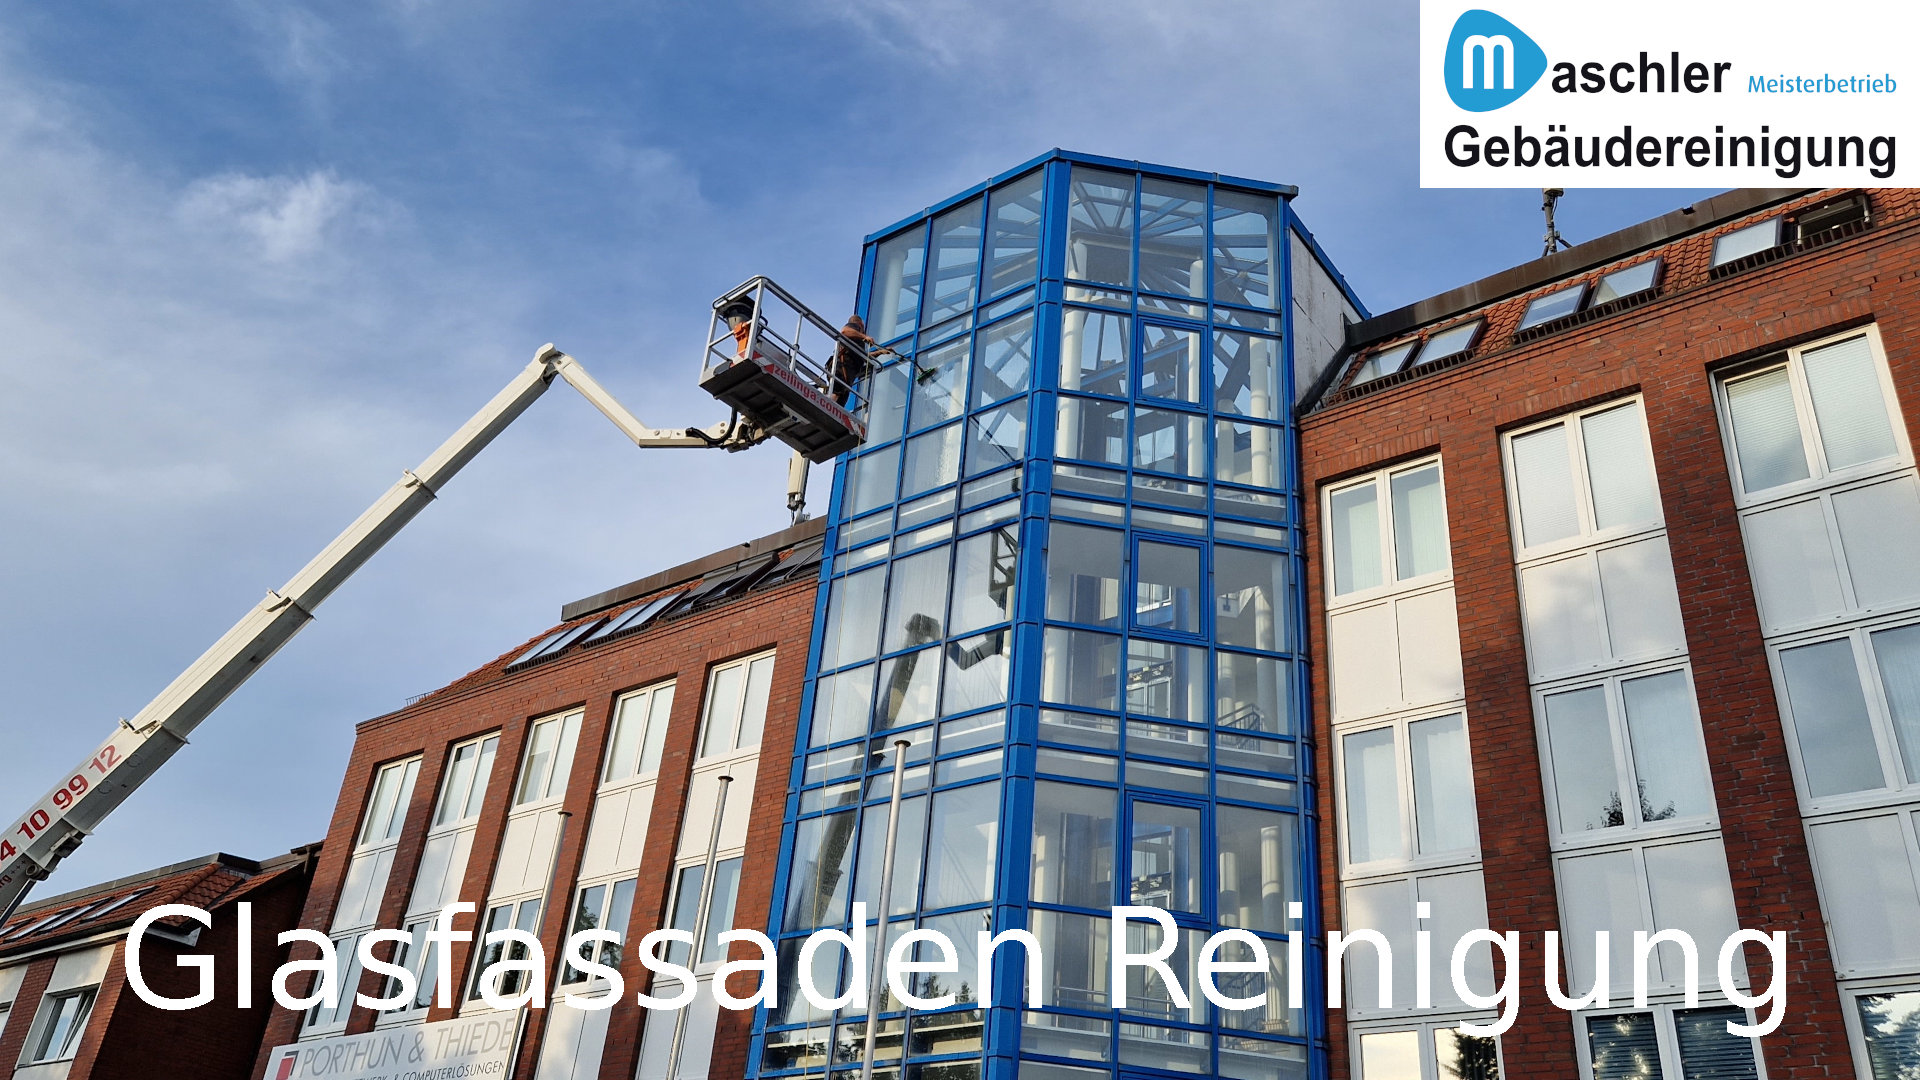 Glasfassade reinigen - Gebäudereinigung Maschler Schwerin